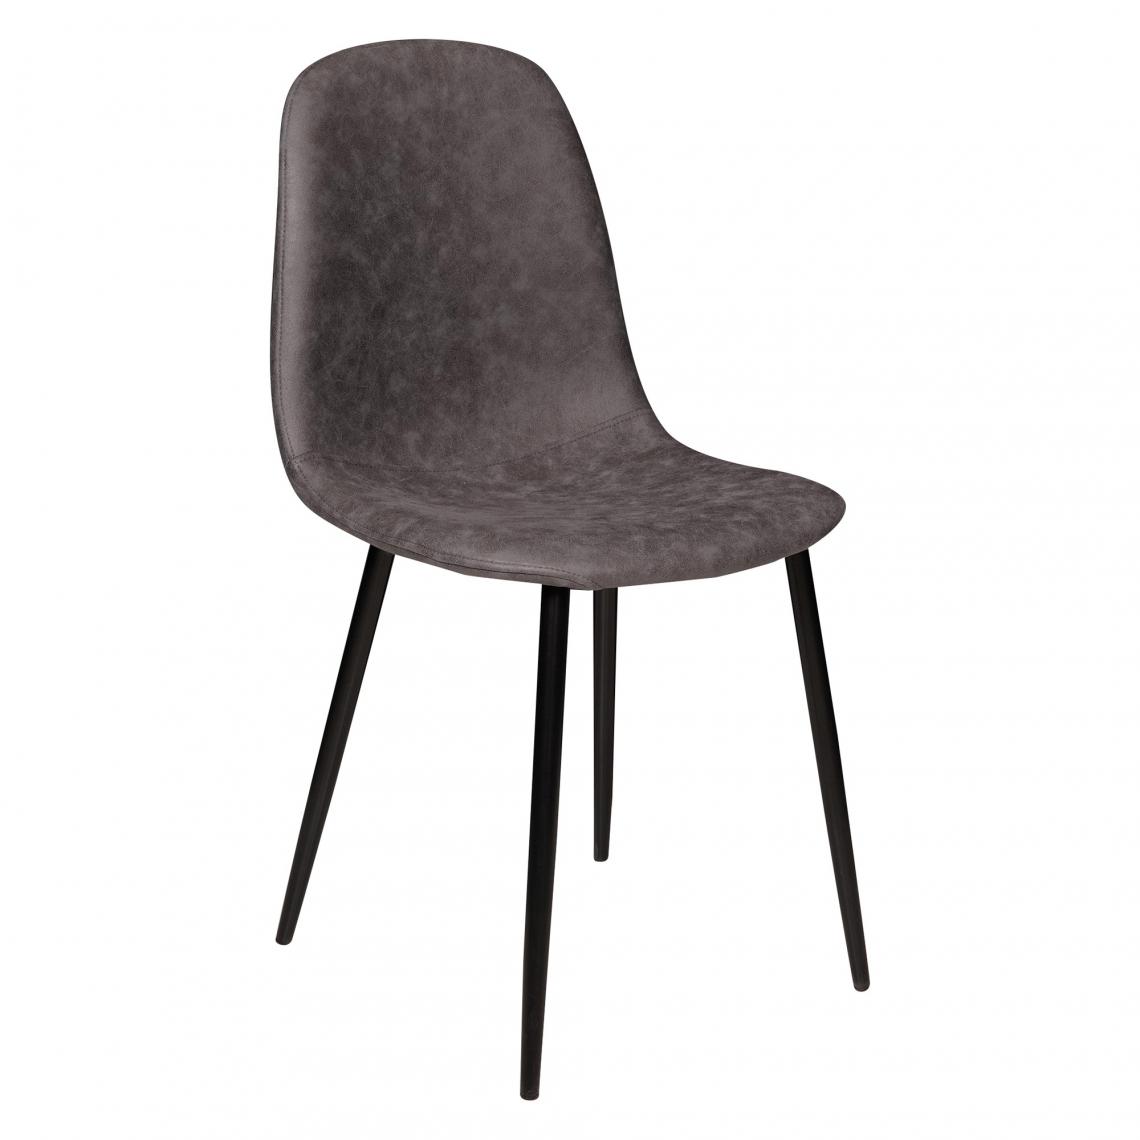 Alter - Chaise élégante en éco-cuir avec pieds en métal, Fauteuil pour salle à manger, 46x45h87 cm, Couleur Gris - Chaises